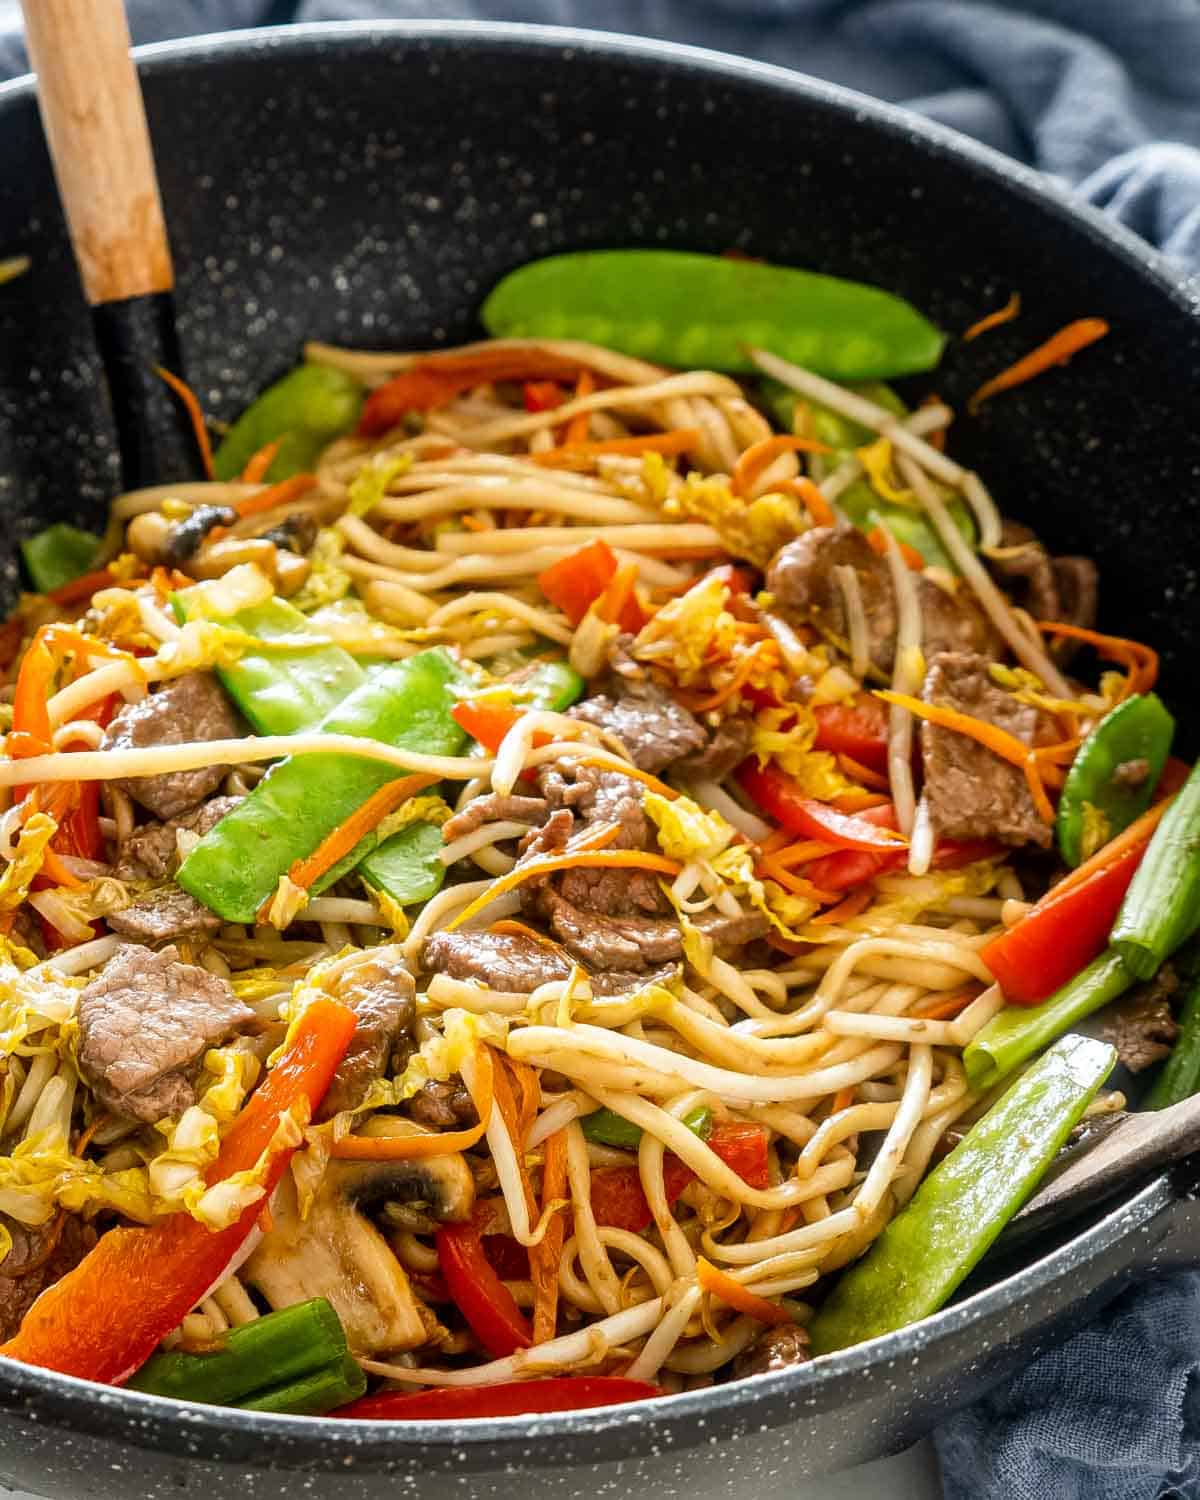 beef lo mein in a black wok.